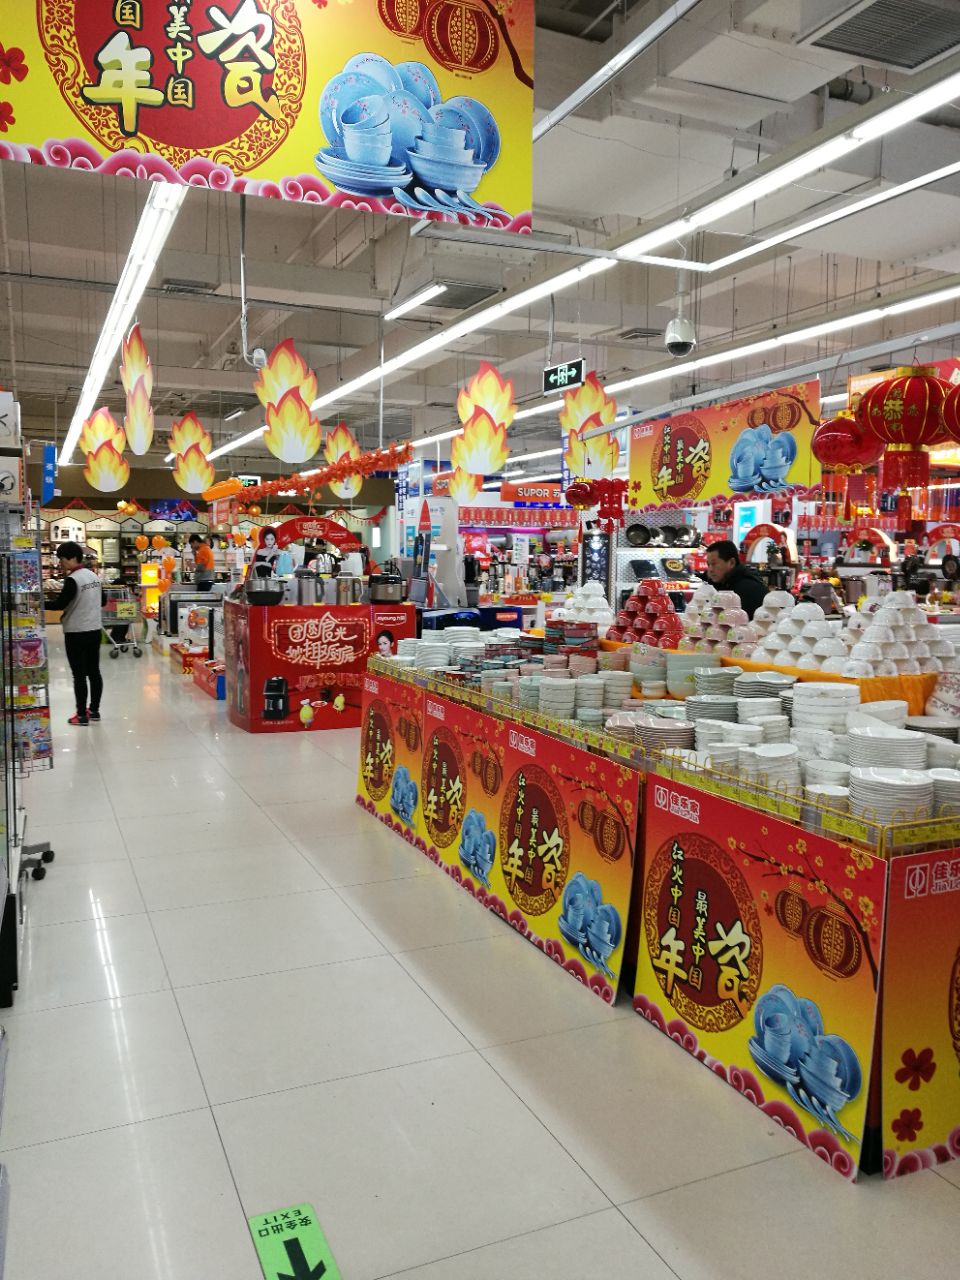 【携程攻略】青岛佳乐家超市购物,佳乐家超市在潍坊有